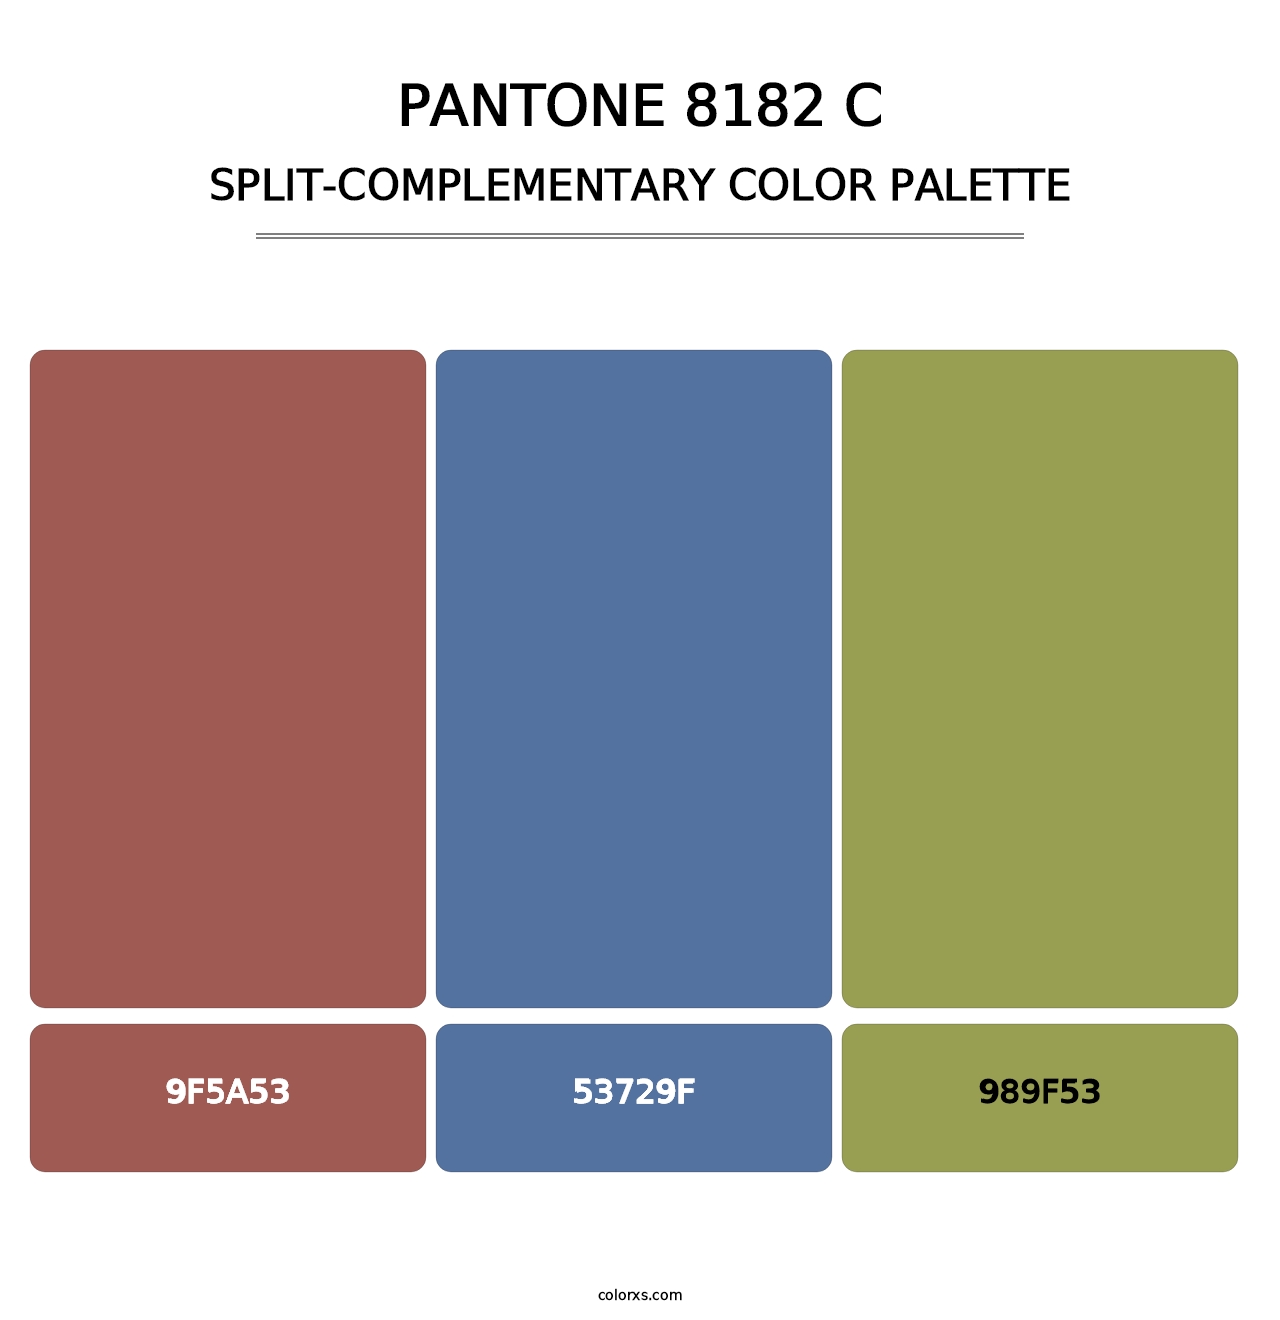 PANTONE 8182 C - Split-Complementary Color Palette